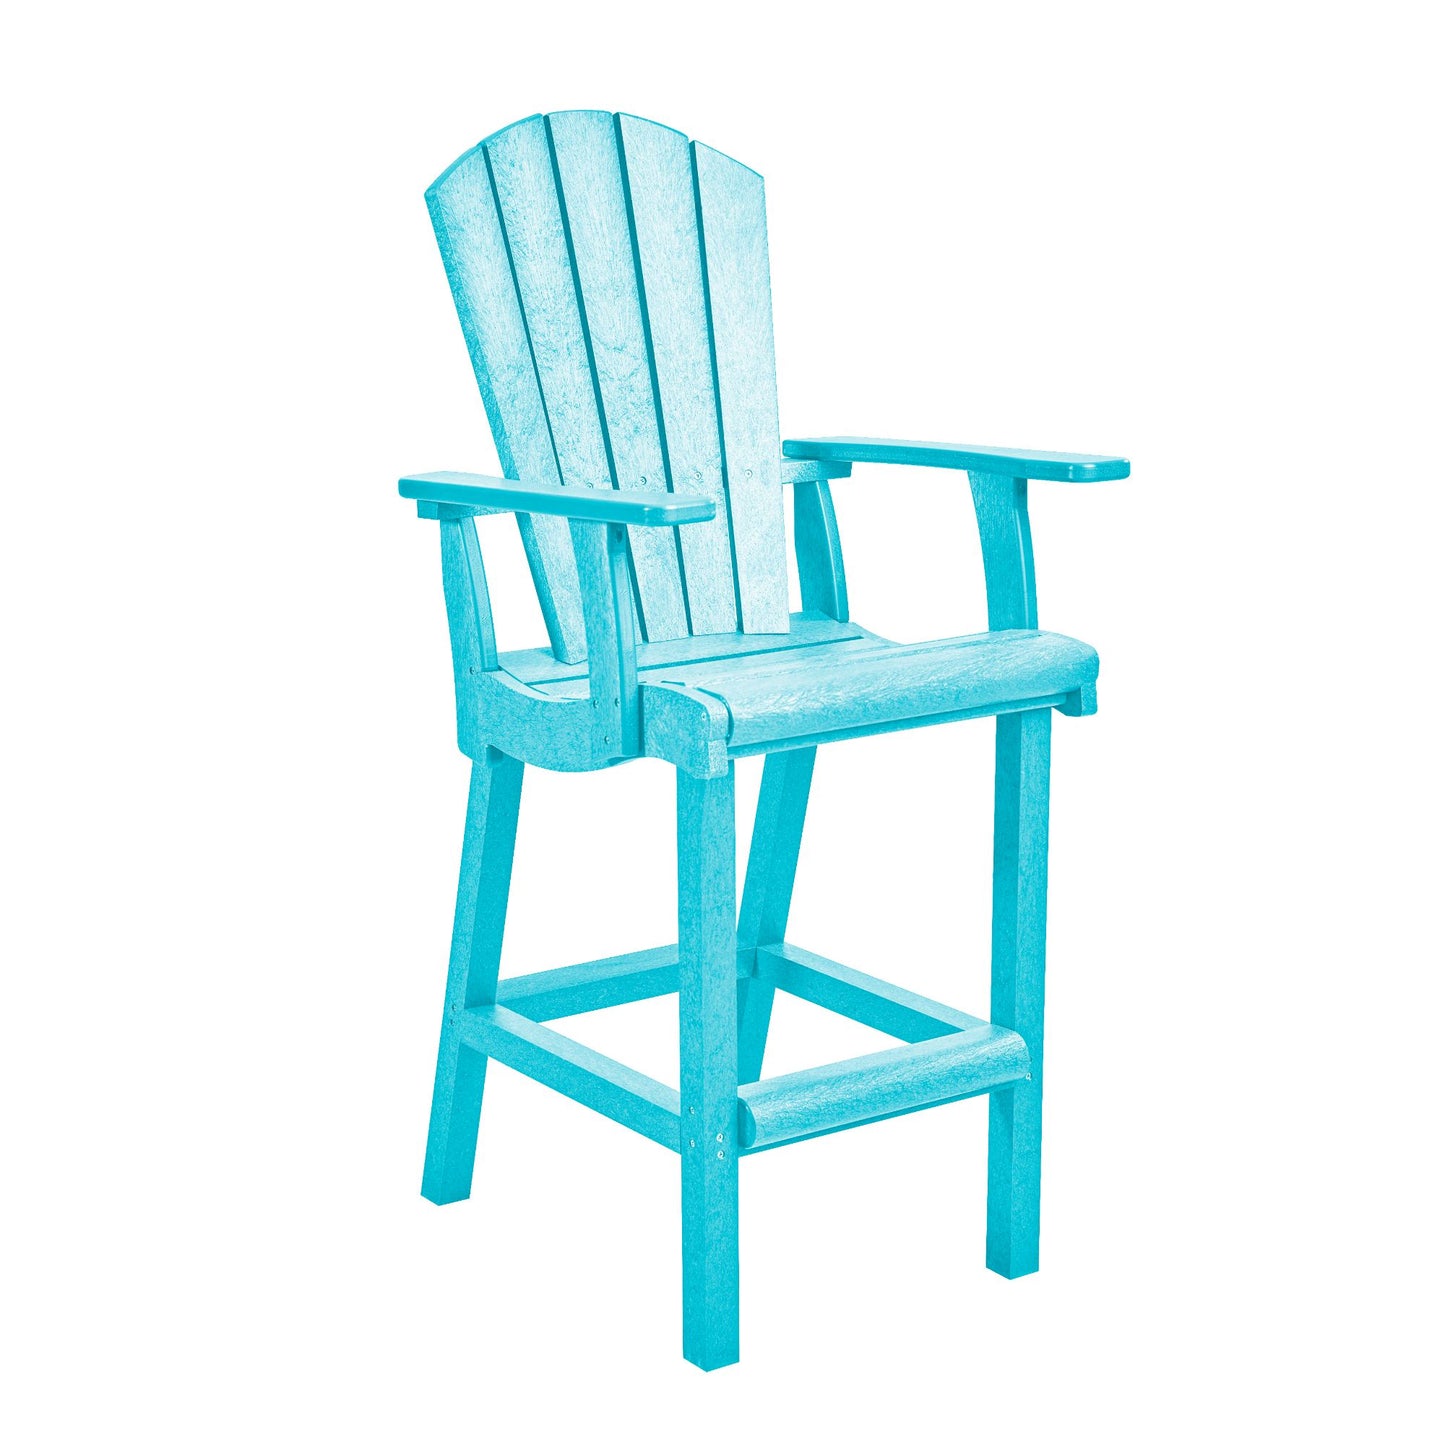 CR Plastics C28 Classic Pub Arm Chair